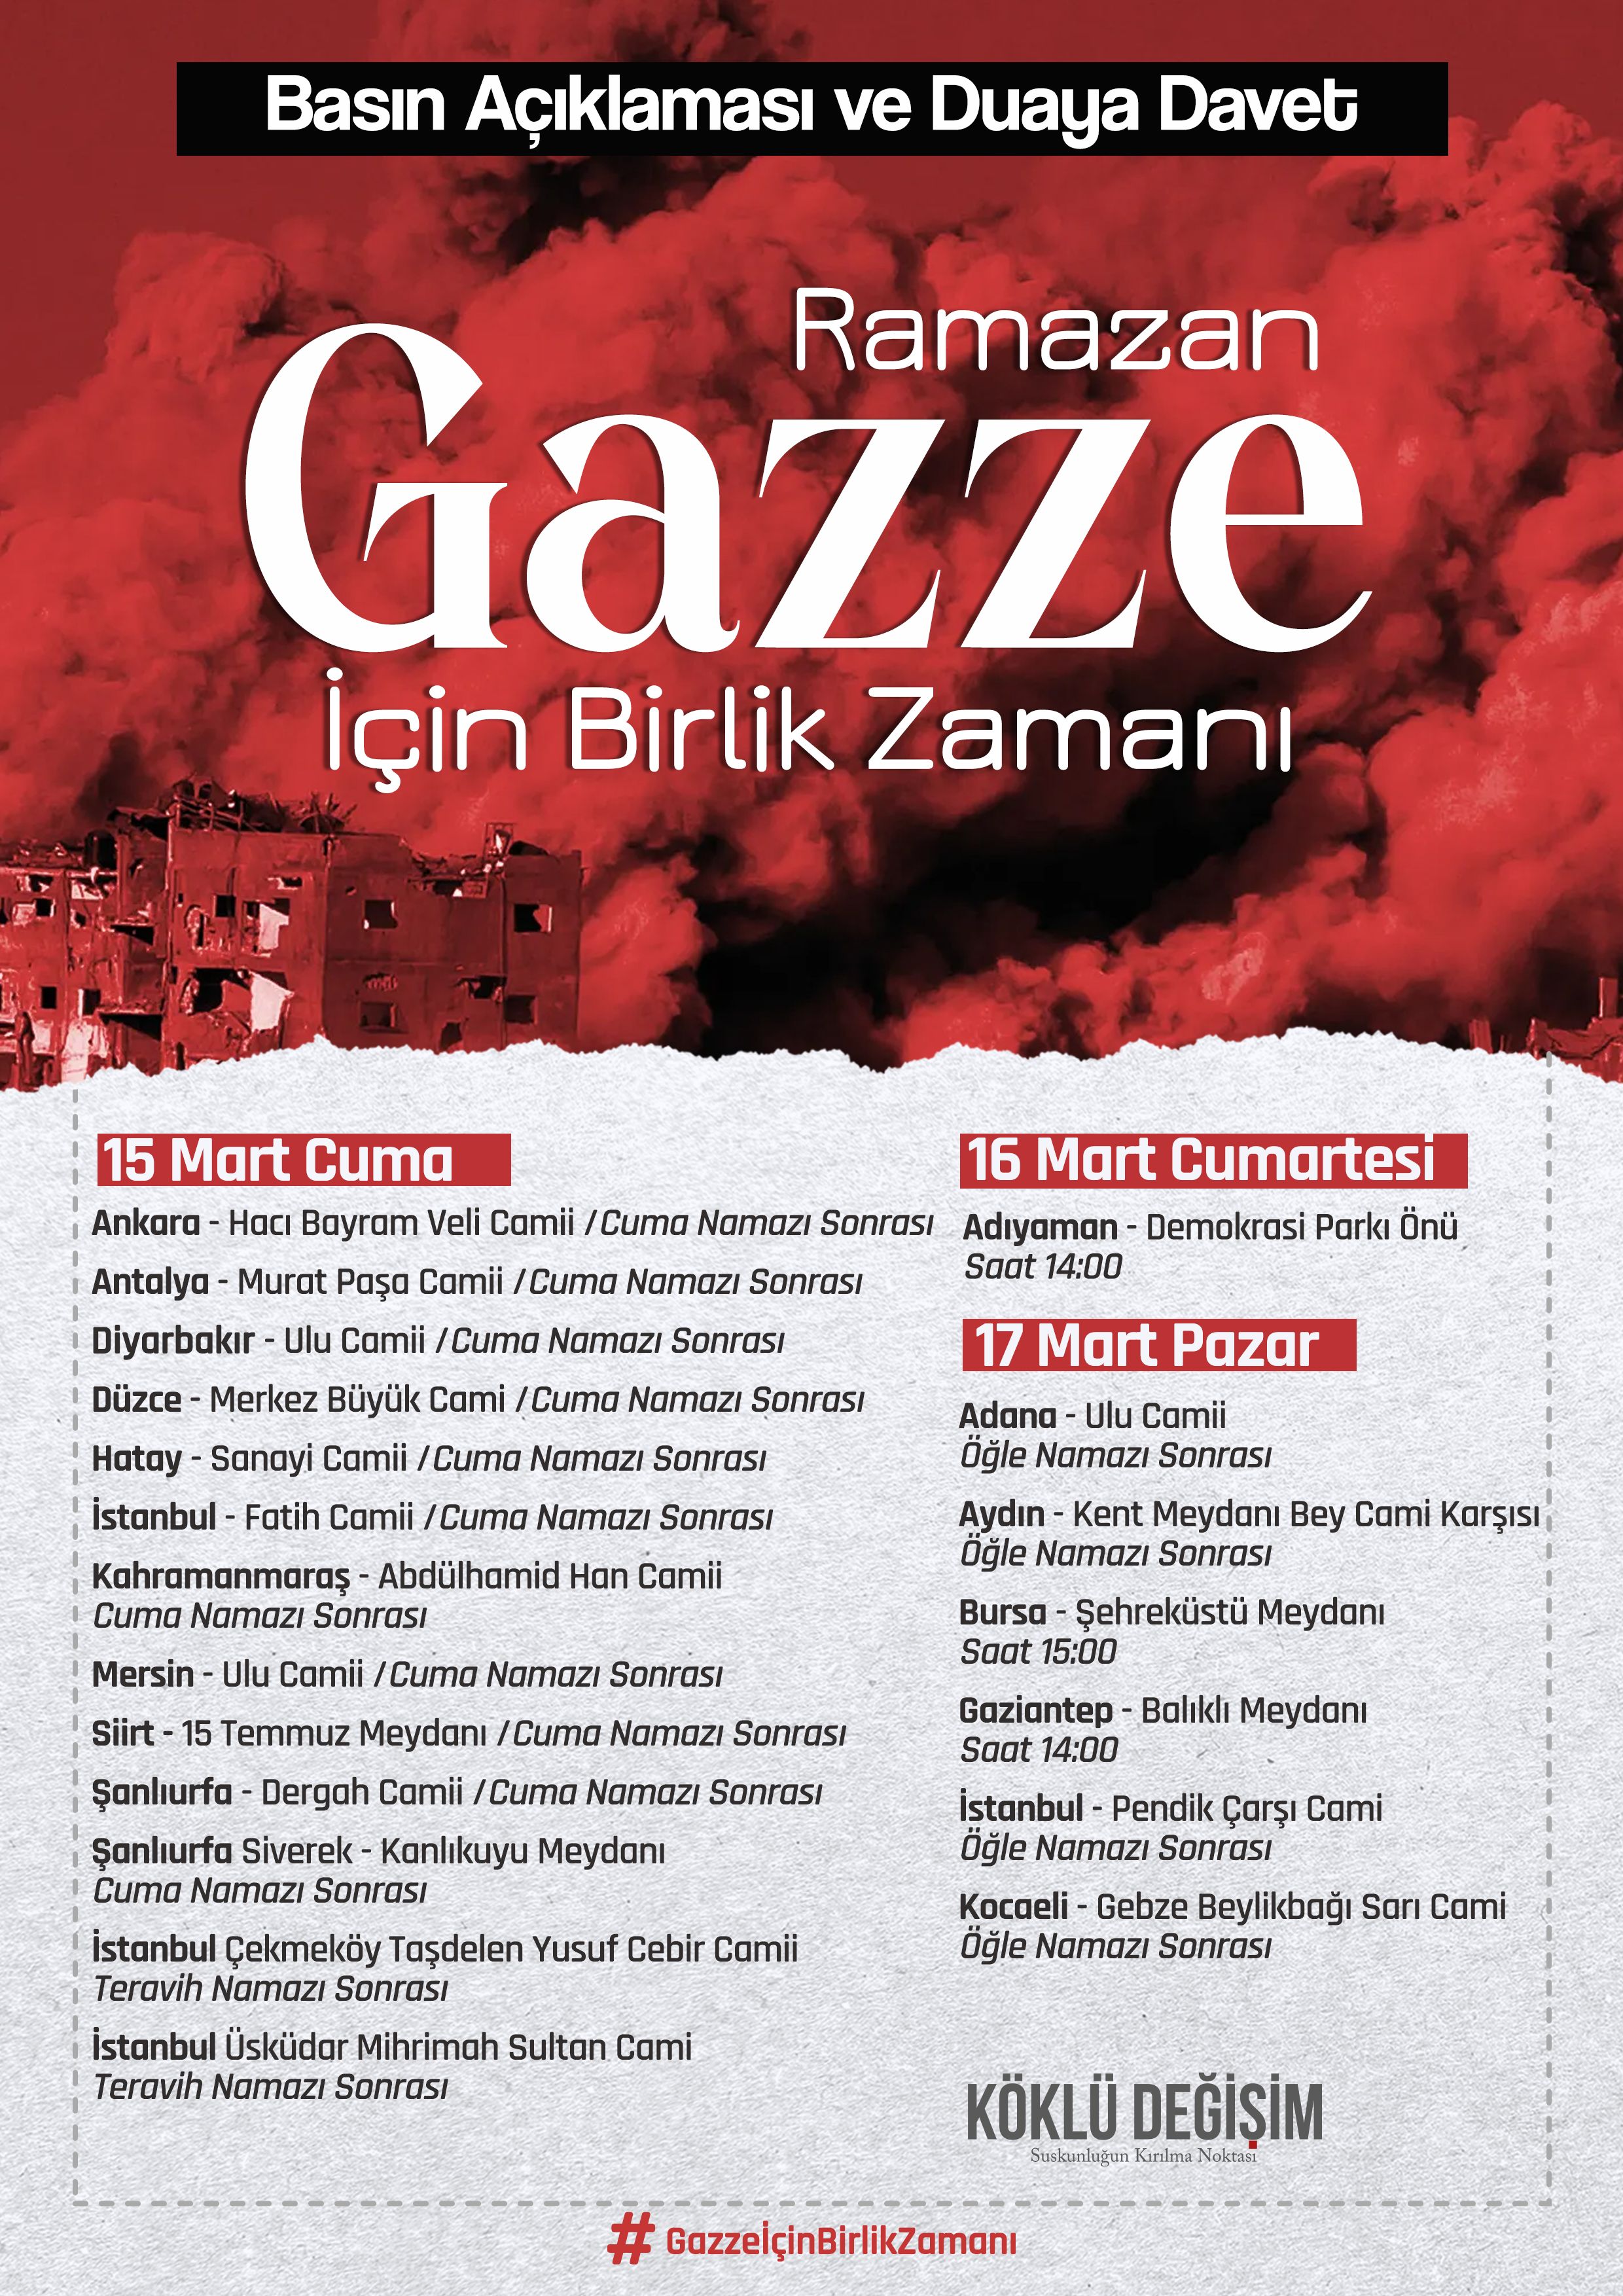 köklü değişim ramazan gazze için birlik zamanı basın açıklaması duyuru afişi (1).jpg